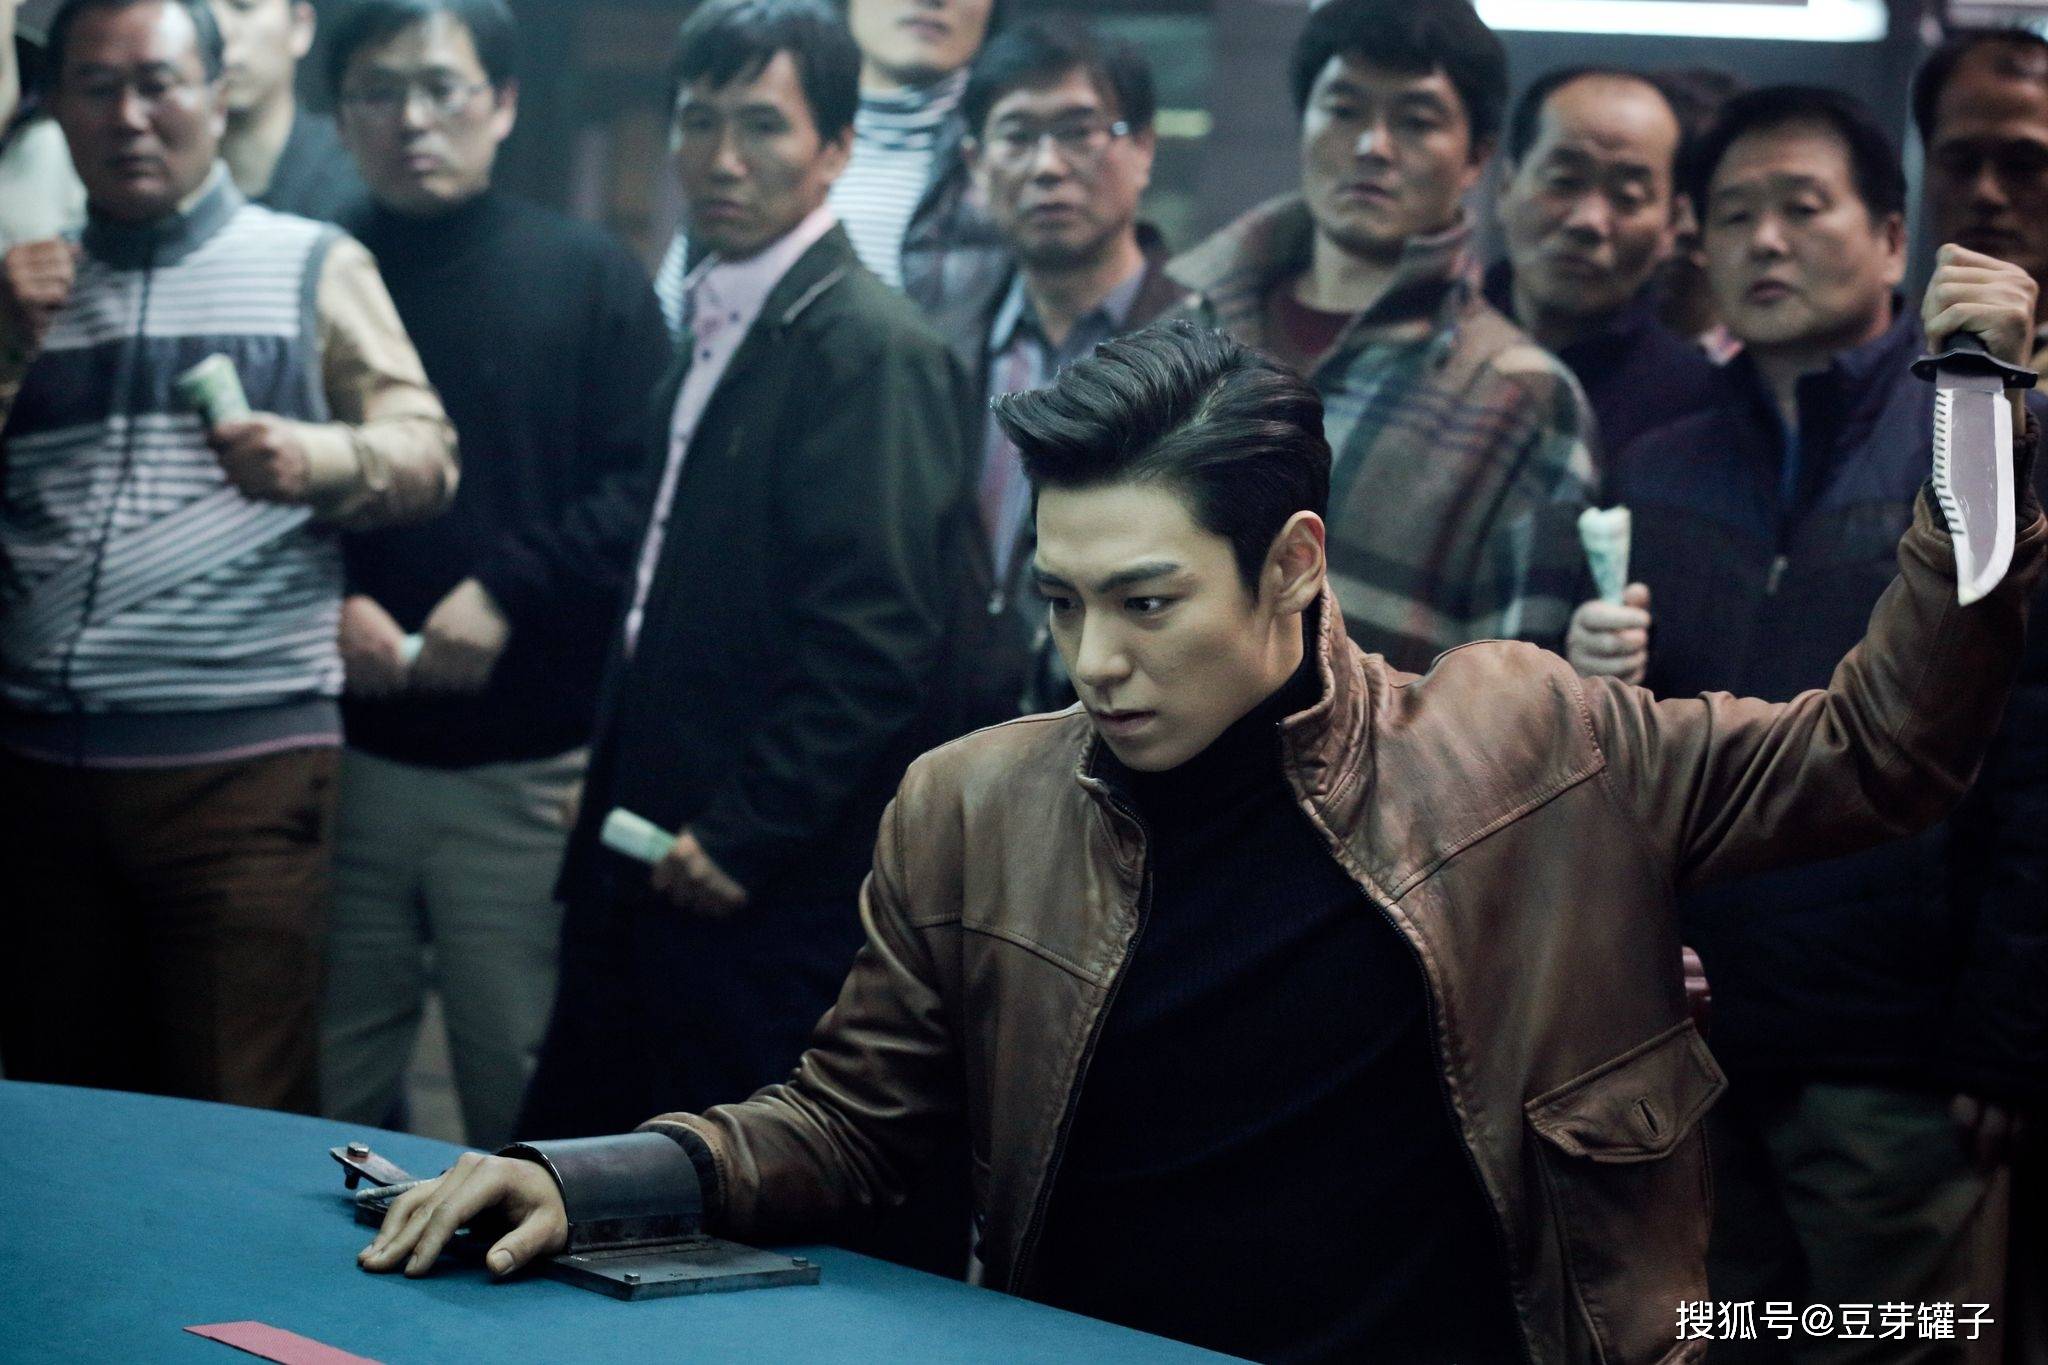 《老千2:神之手》,韩国经典赌片,为防老千,赌徒们脱光打牌